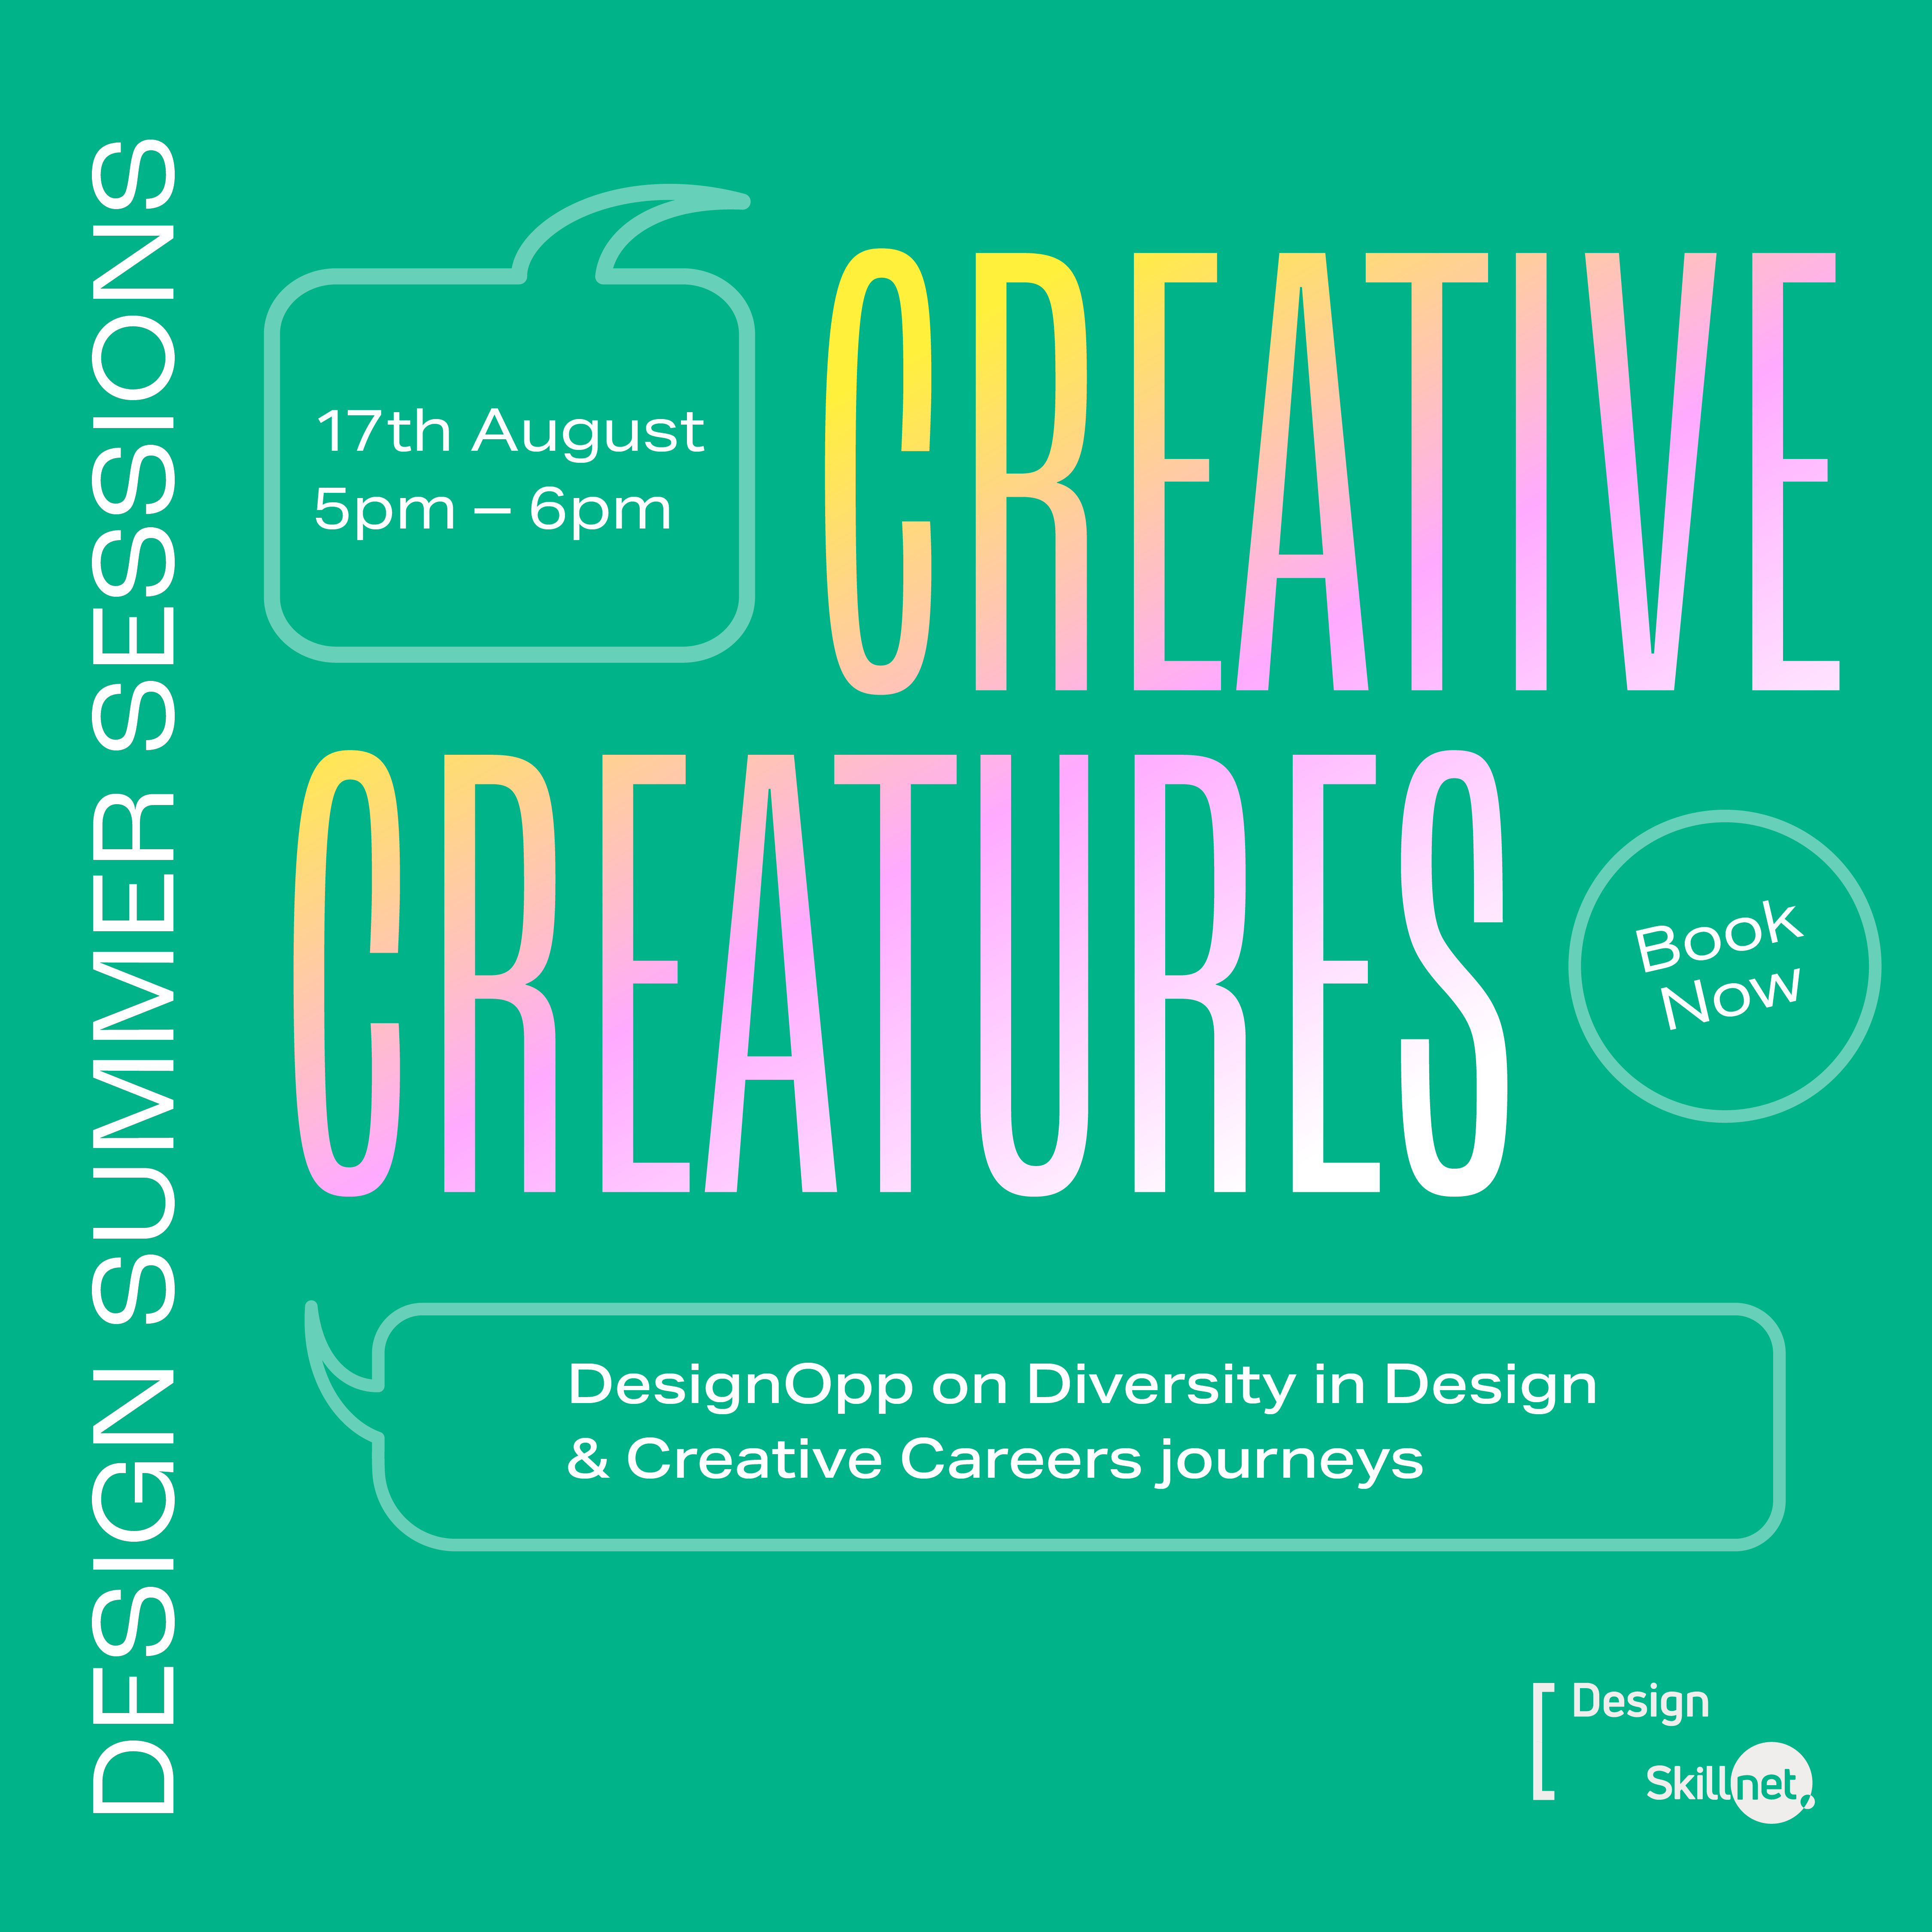 DesignOpp creative creatures